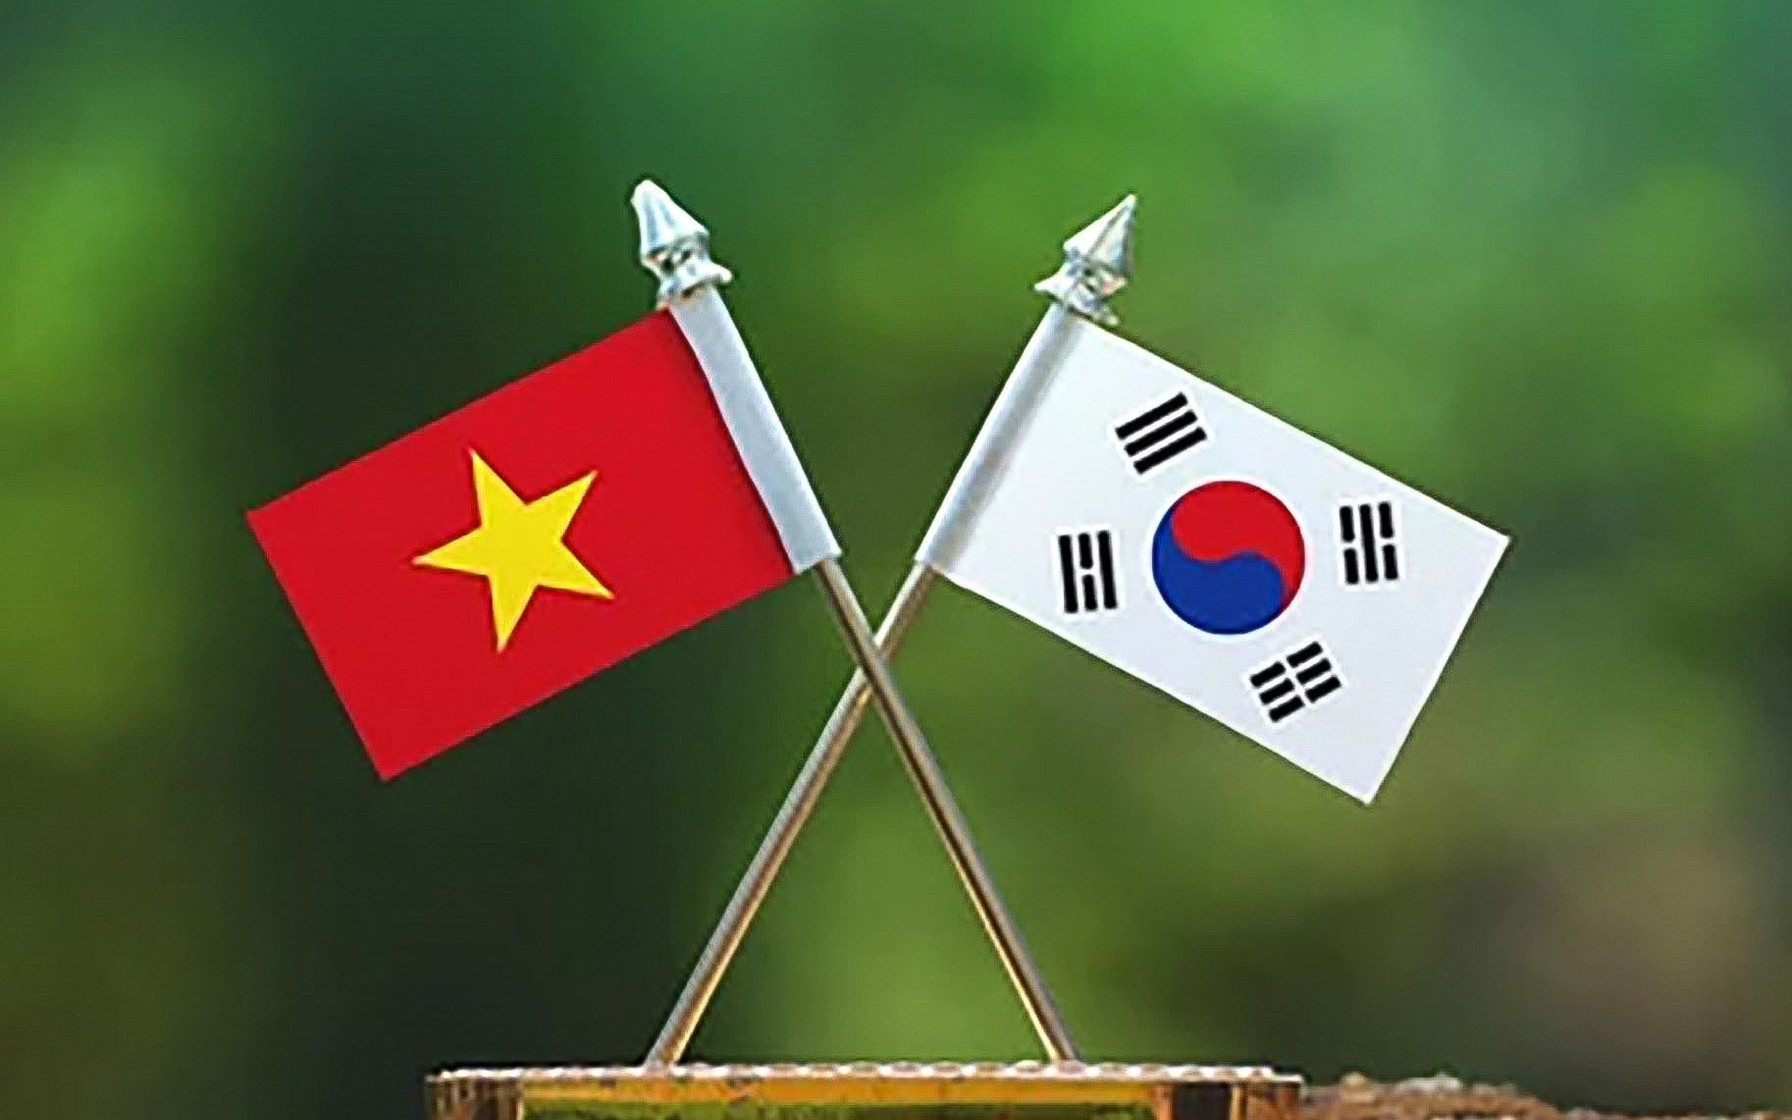 Quan hệ phát triển rực rỡ giữa Việt Nam và Hàn Quốc là một thành công rực rỡ. Trận đấu cờ giữa hai đội đã mang lại nhiều niềm vui và cảm hứng cho người hâm mộ. Các cờ thủ Việt Nam và Hàn Quốc đã cống hiến tất cả khả năng và trực tiếp tạo nên một bức tranh đẹp về tình hữu nghị giữa hai quốc gia.